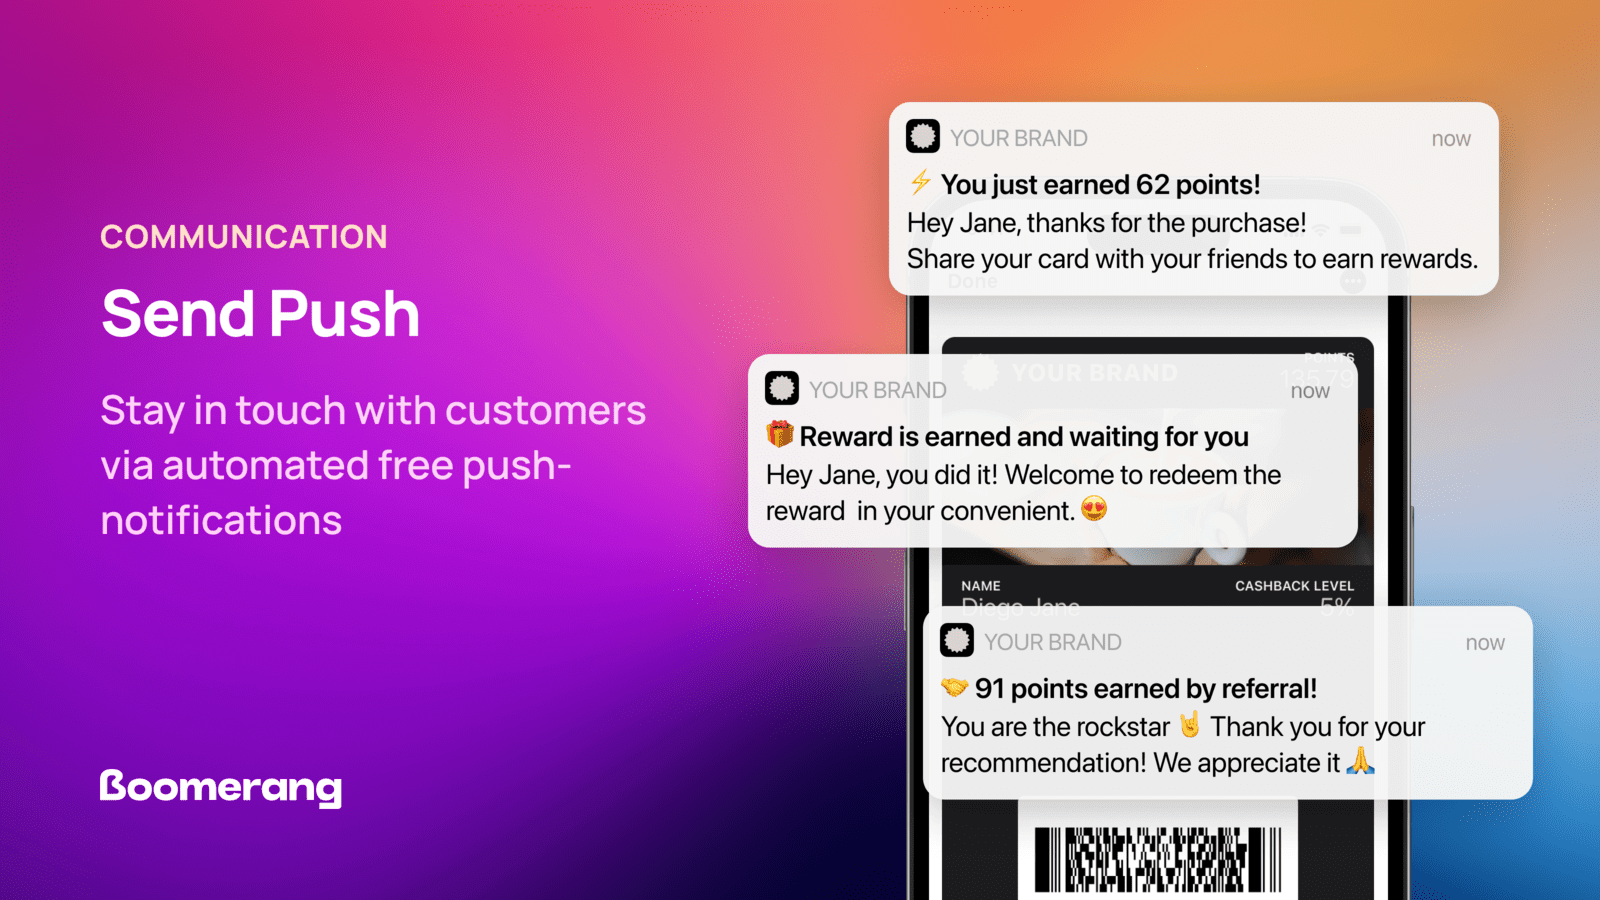 Hold kontakten med kunder via automatiserede gratis push